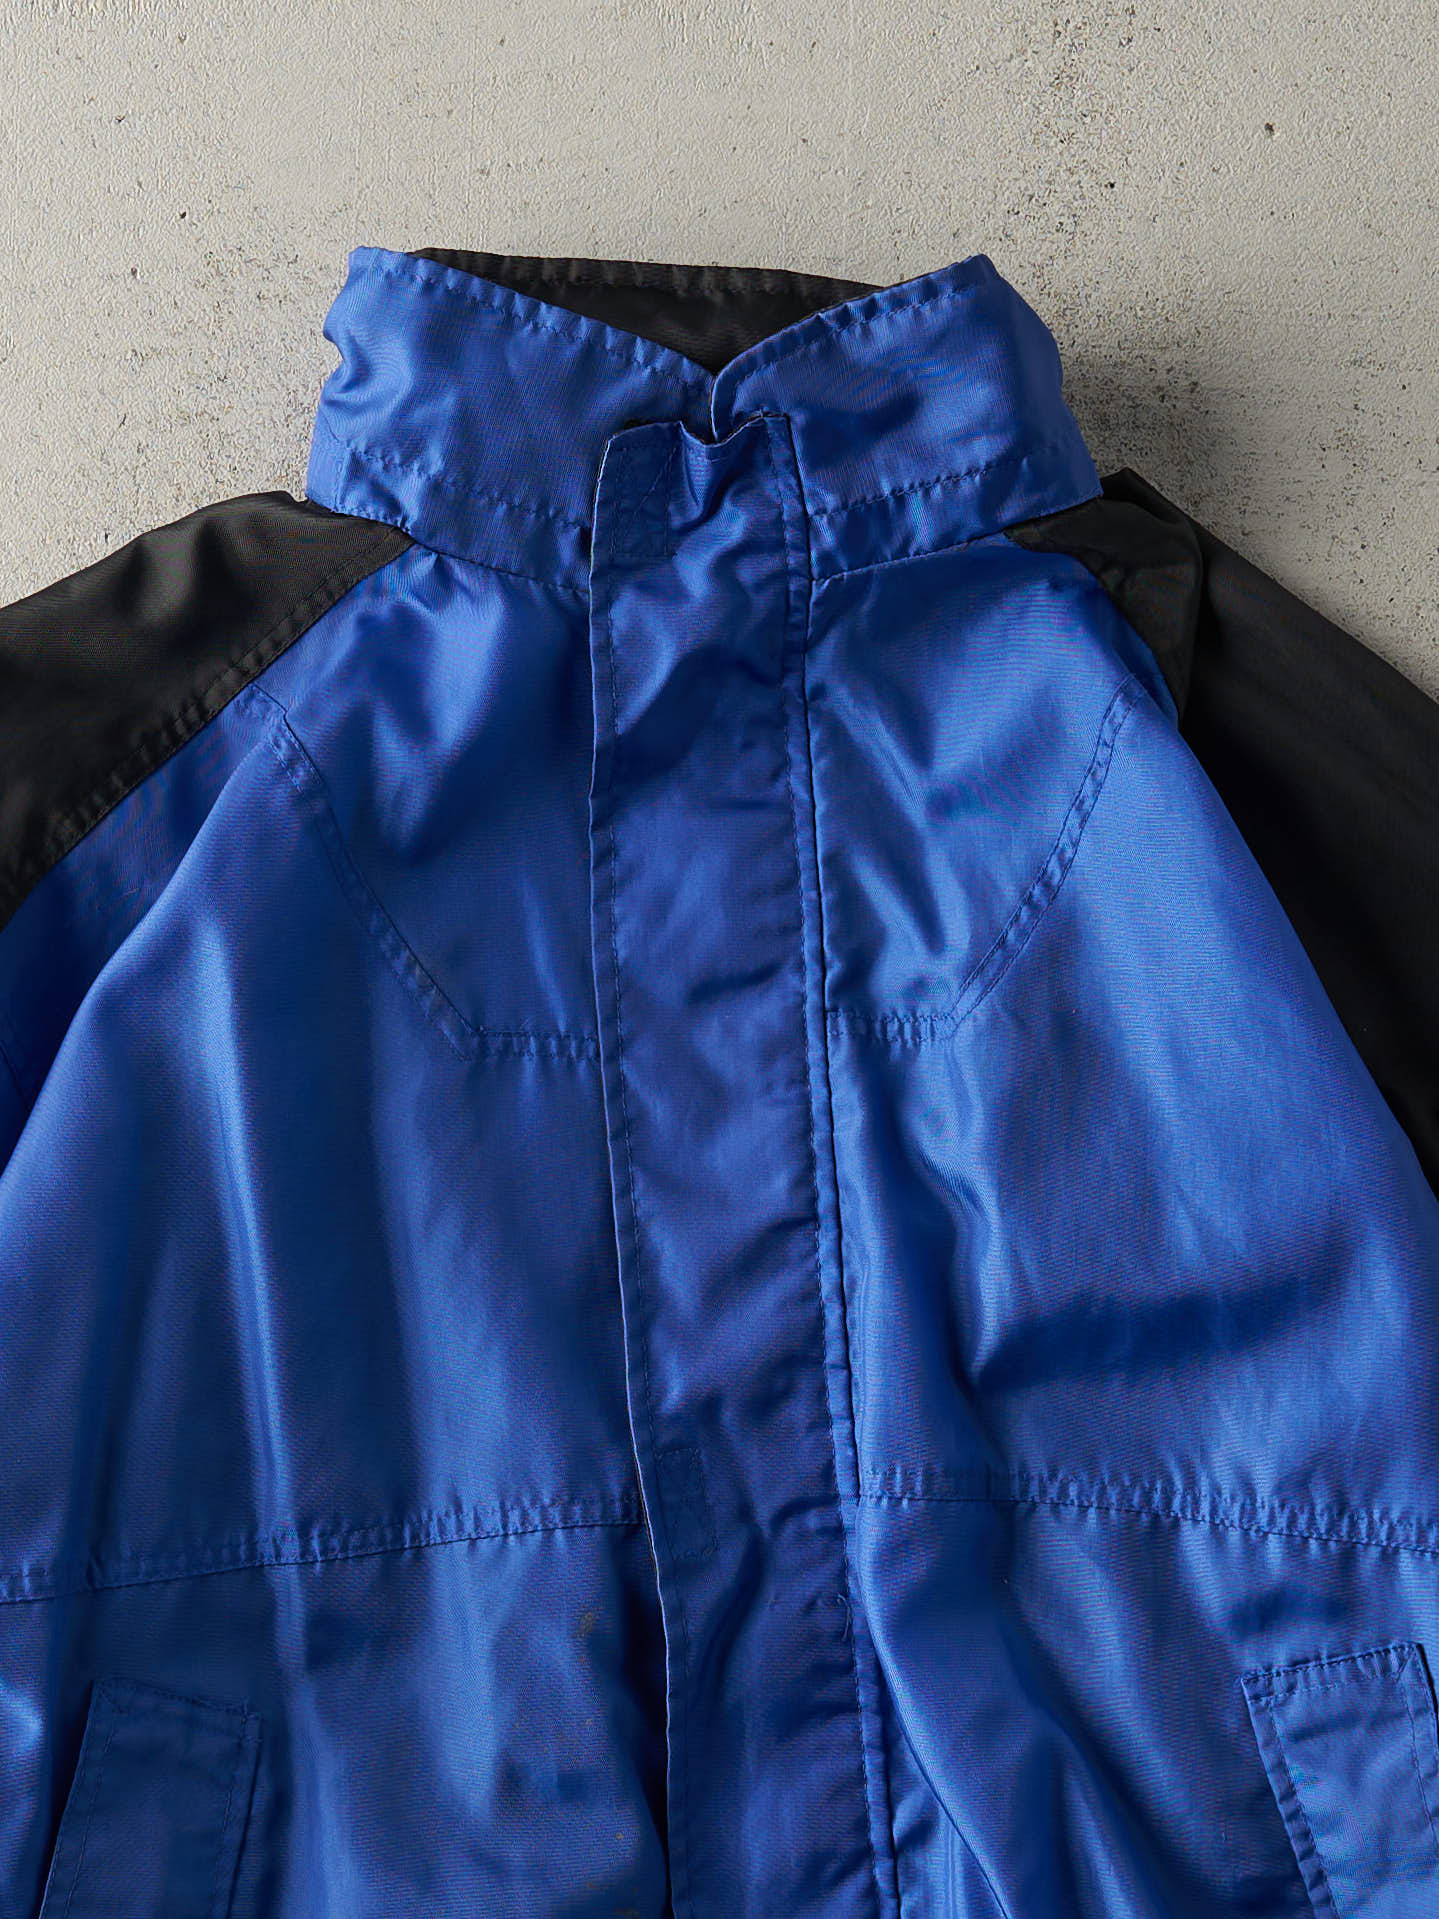 Vintage 90s Blue & Black Marlboro Windbreaker Jacket (L)